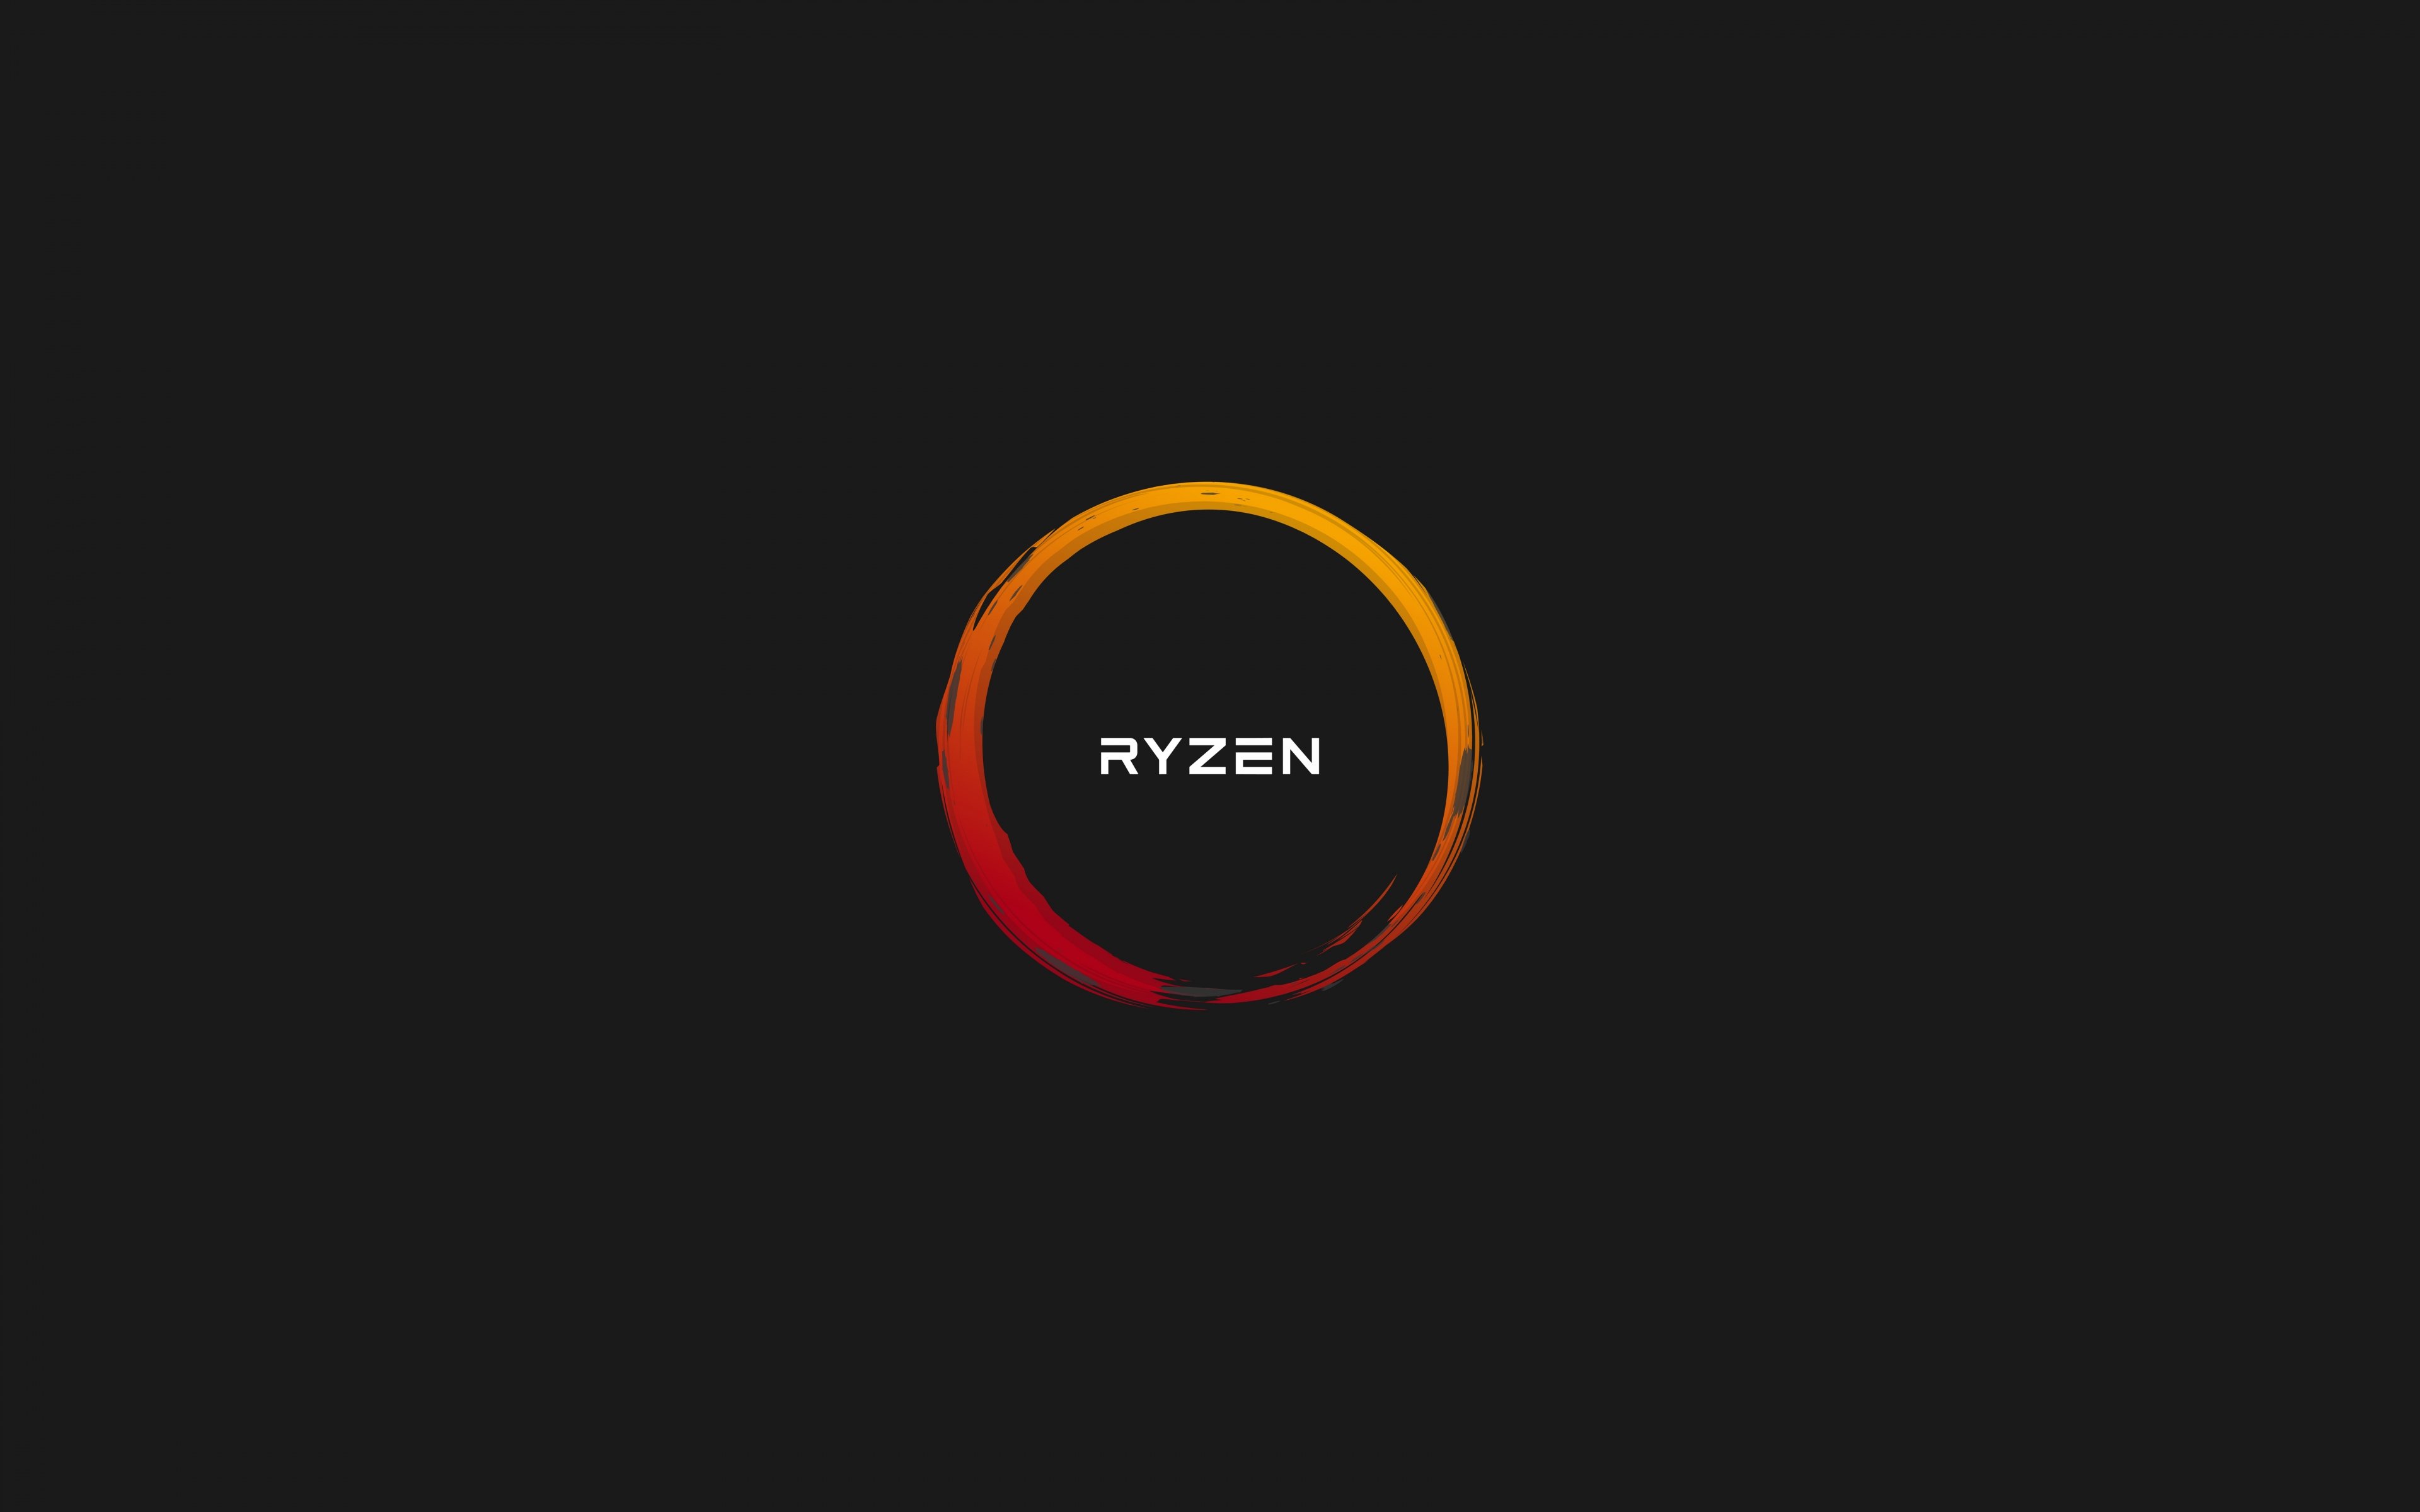 Download Amd Ryzen 8k 4K resolution 16:10 ratio wallpaper